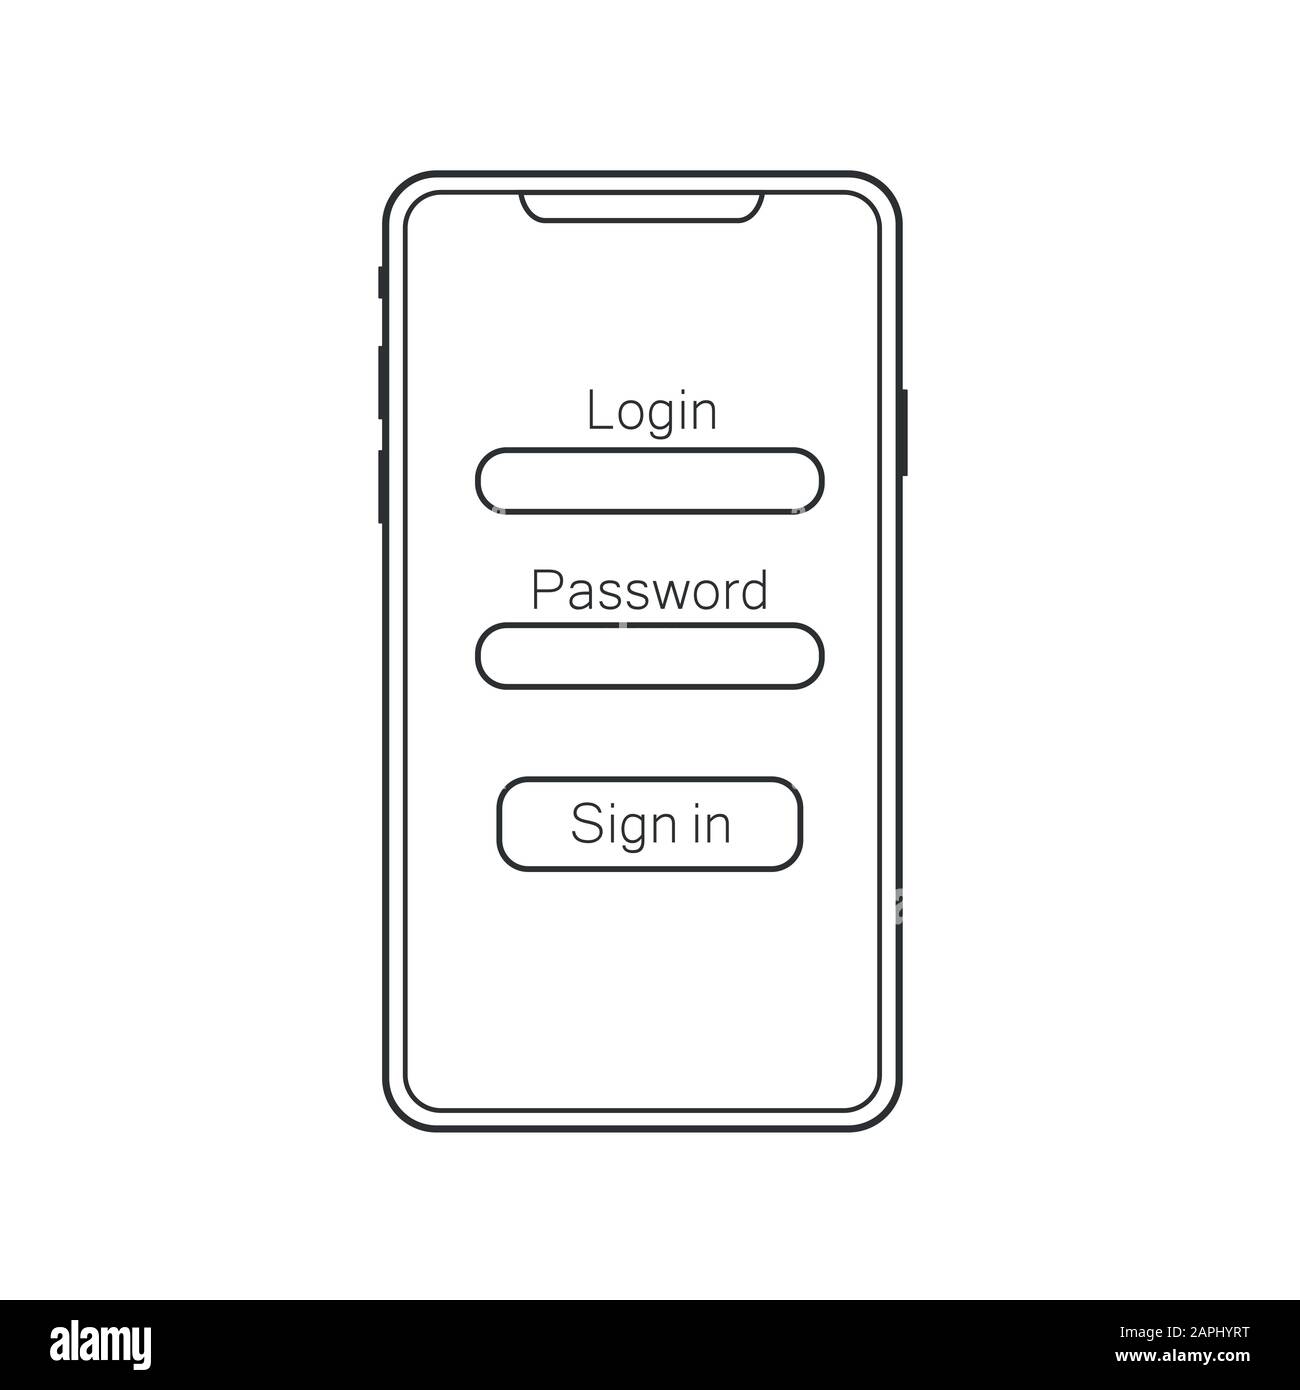 Interfaccia utente di progettazione materiali, UX e layout GUI con Diverse Schermate di accesso, tra cui le funzioni di accesso e registrazione account per le app mobili e il sito Web Dinamico. EPS 10 Illustrazione Vettoriale